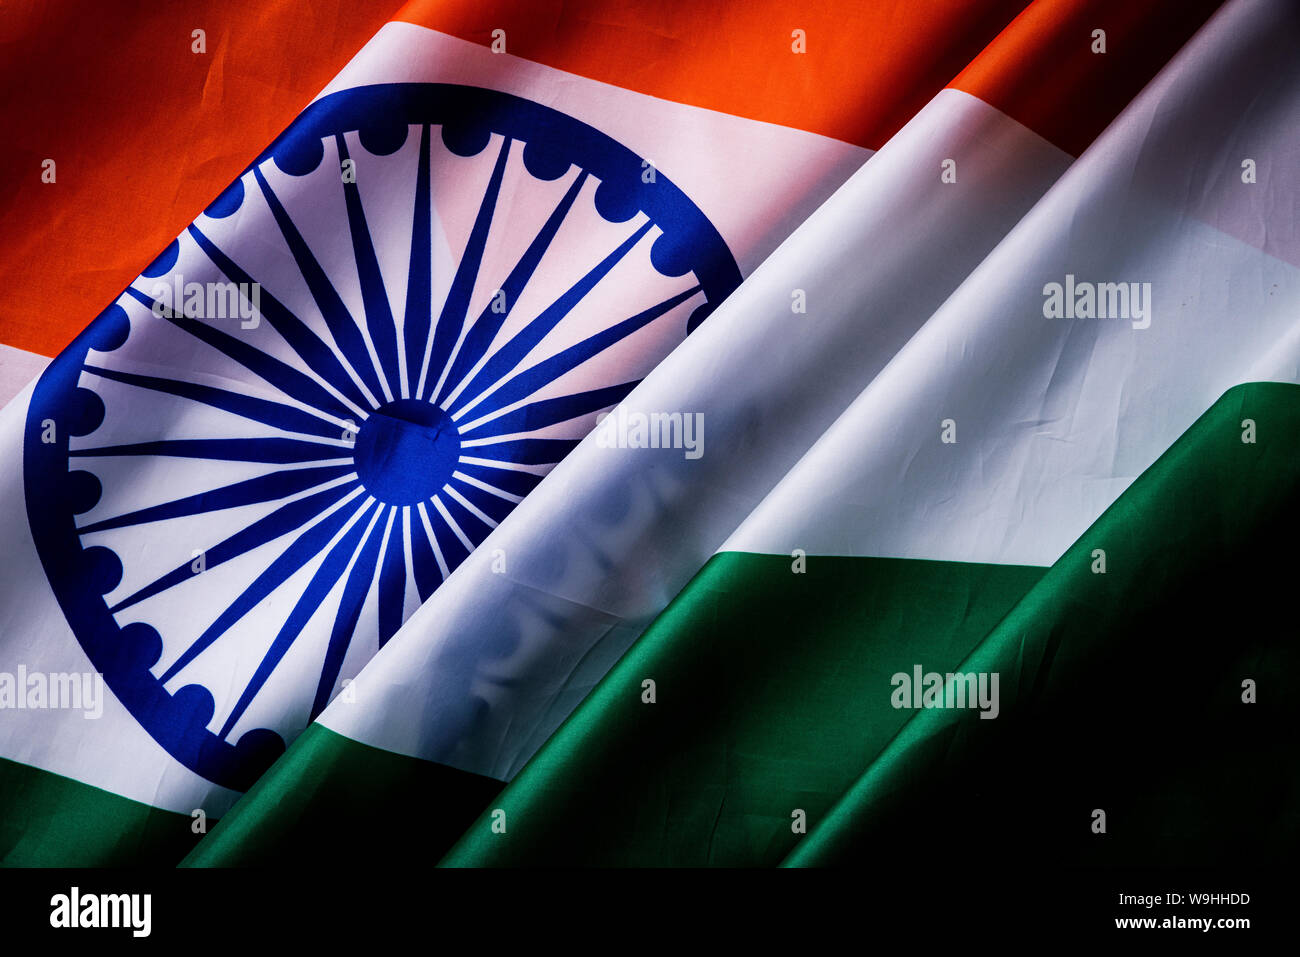 Vista superior de la Bandera Nacional de la India sobre fondo de madera. Día de la independencia de la India. Foto de stock